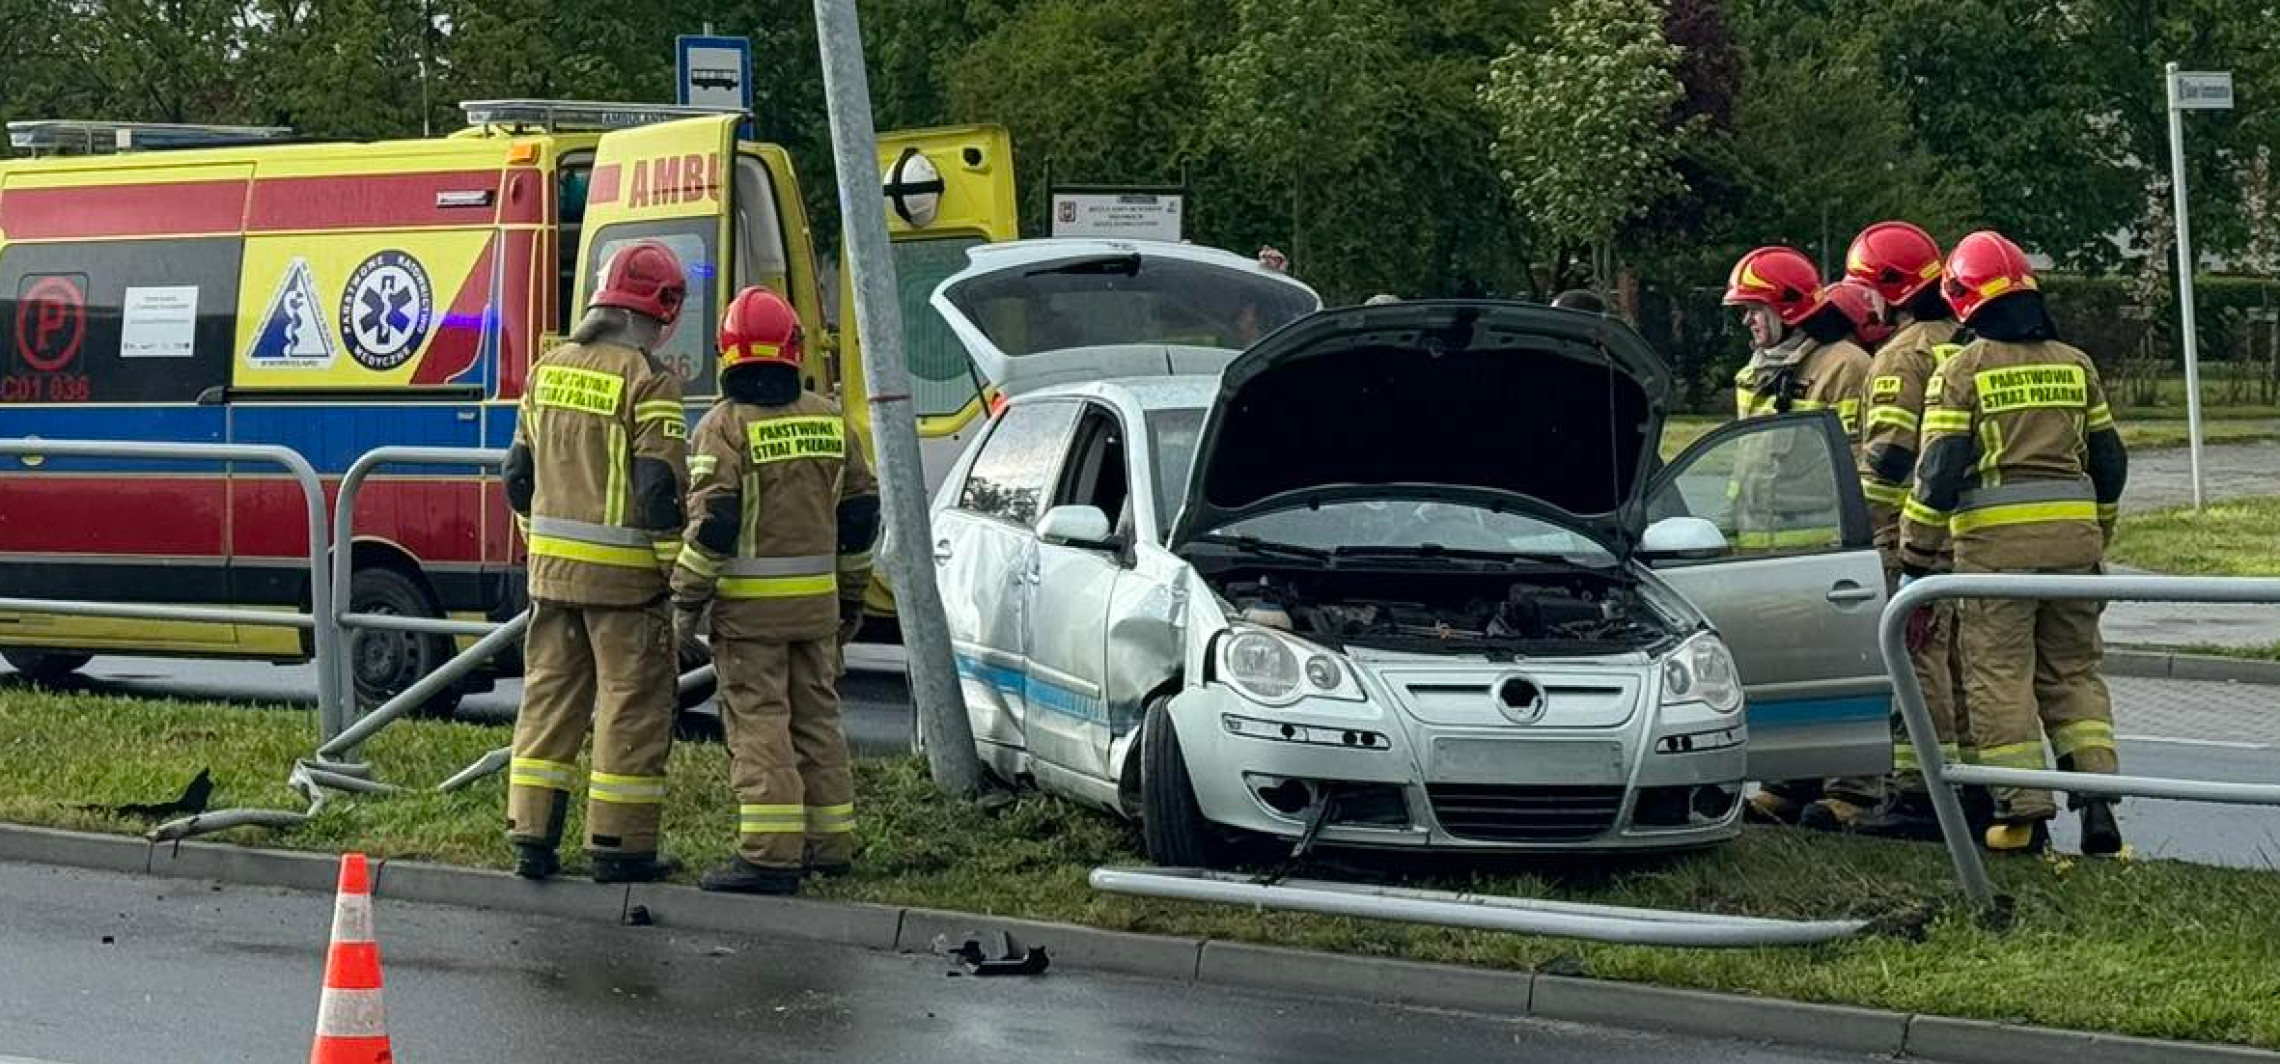 Inowrocław - Policja szuka świadków wypadku na Górniczej